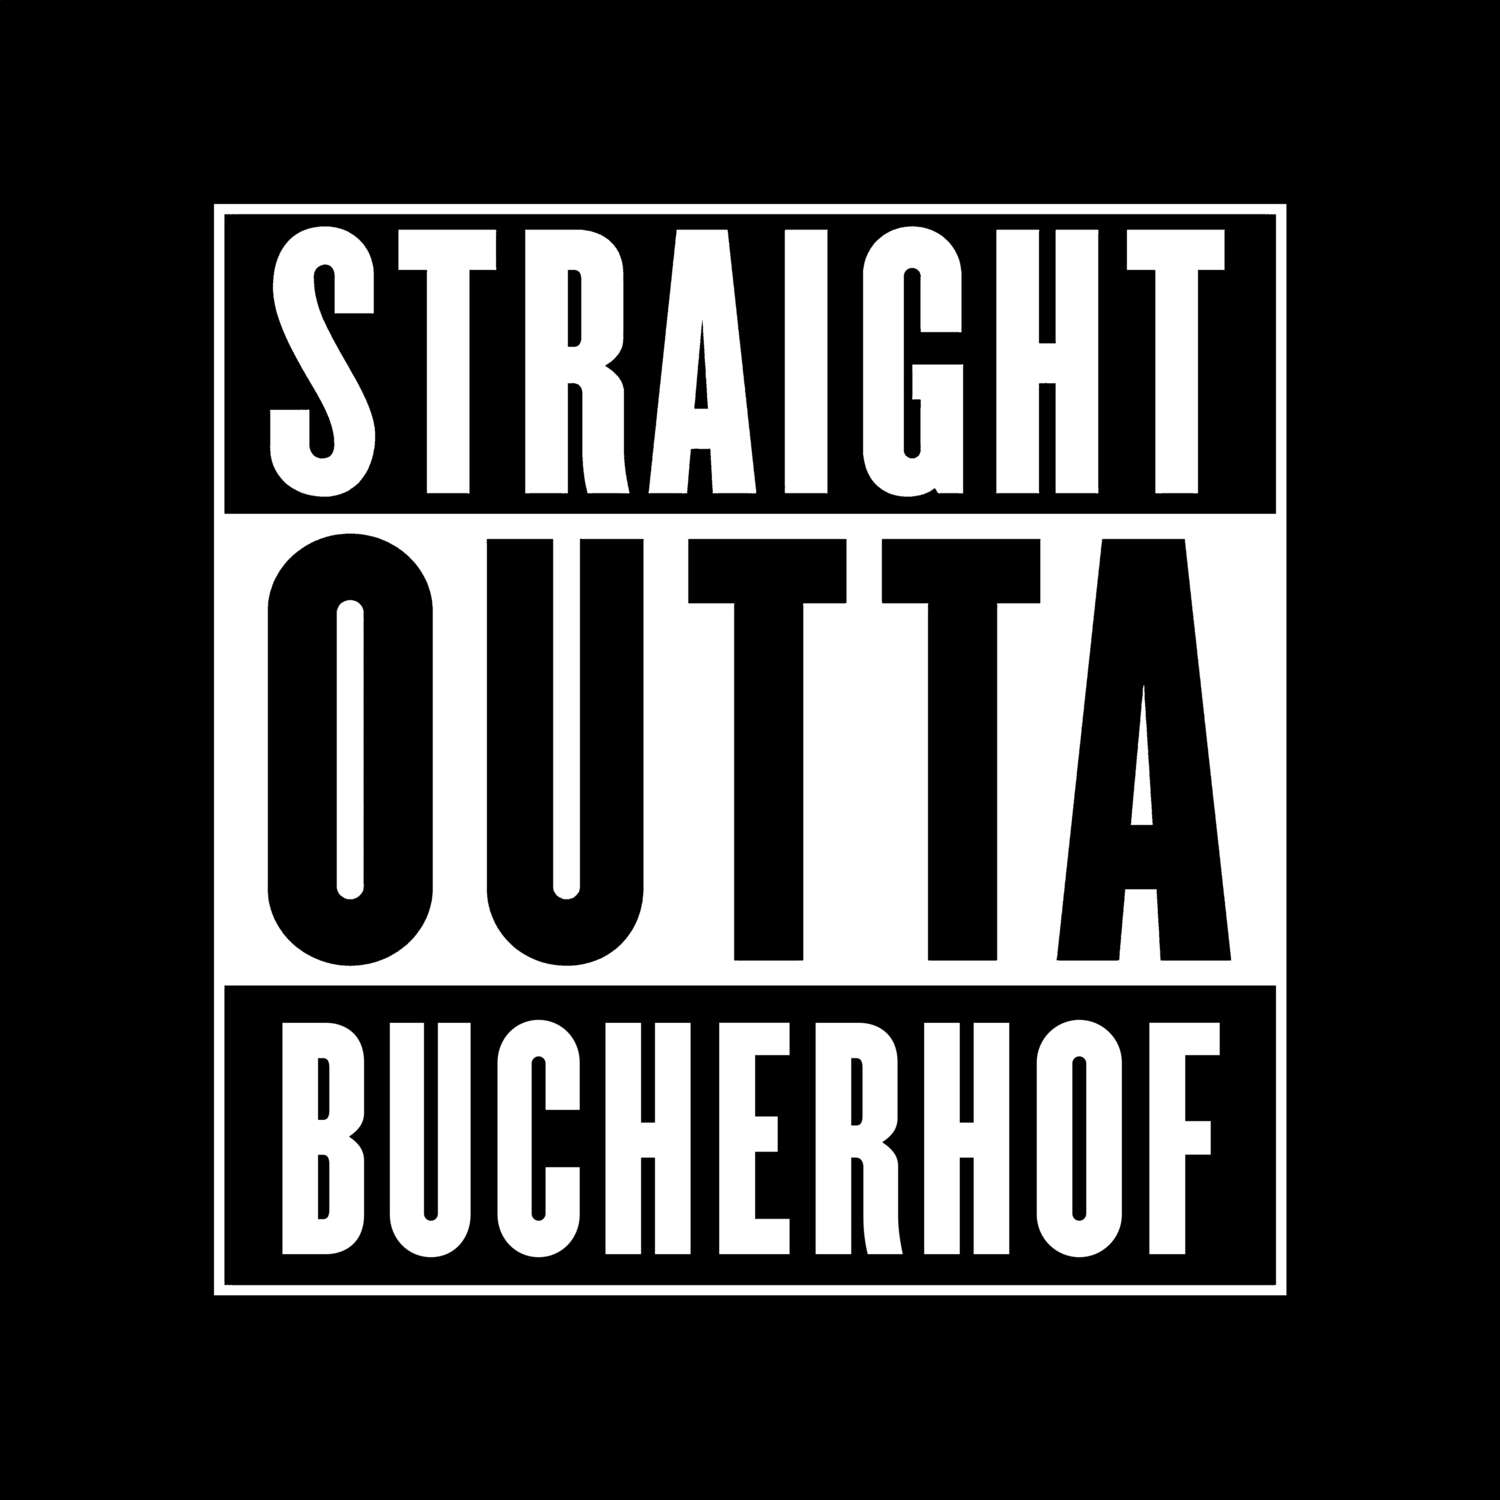 Bucherhof T-Shirt »Straight Outta«